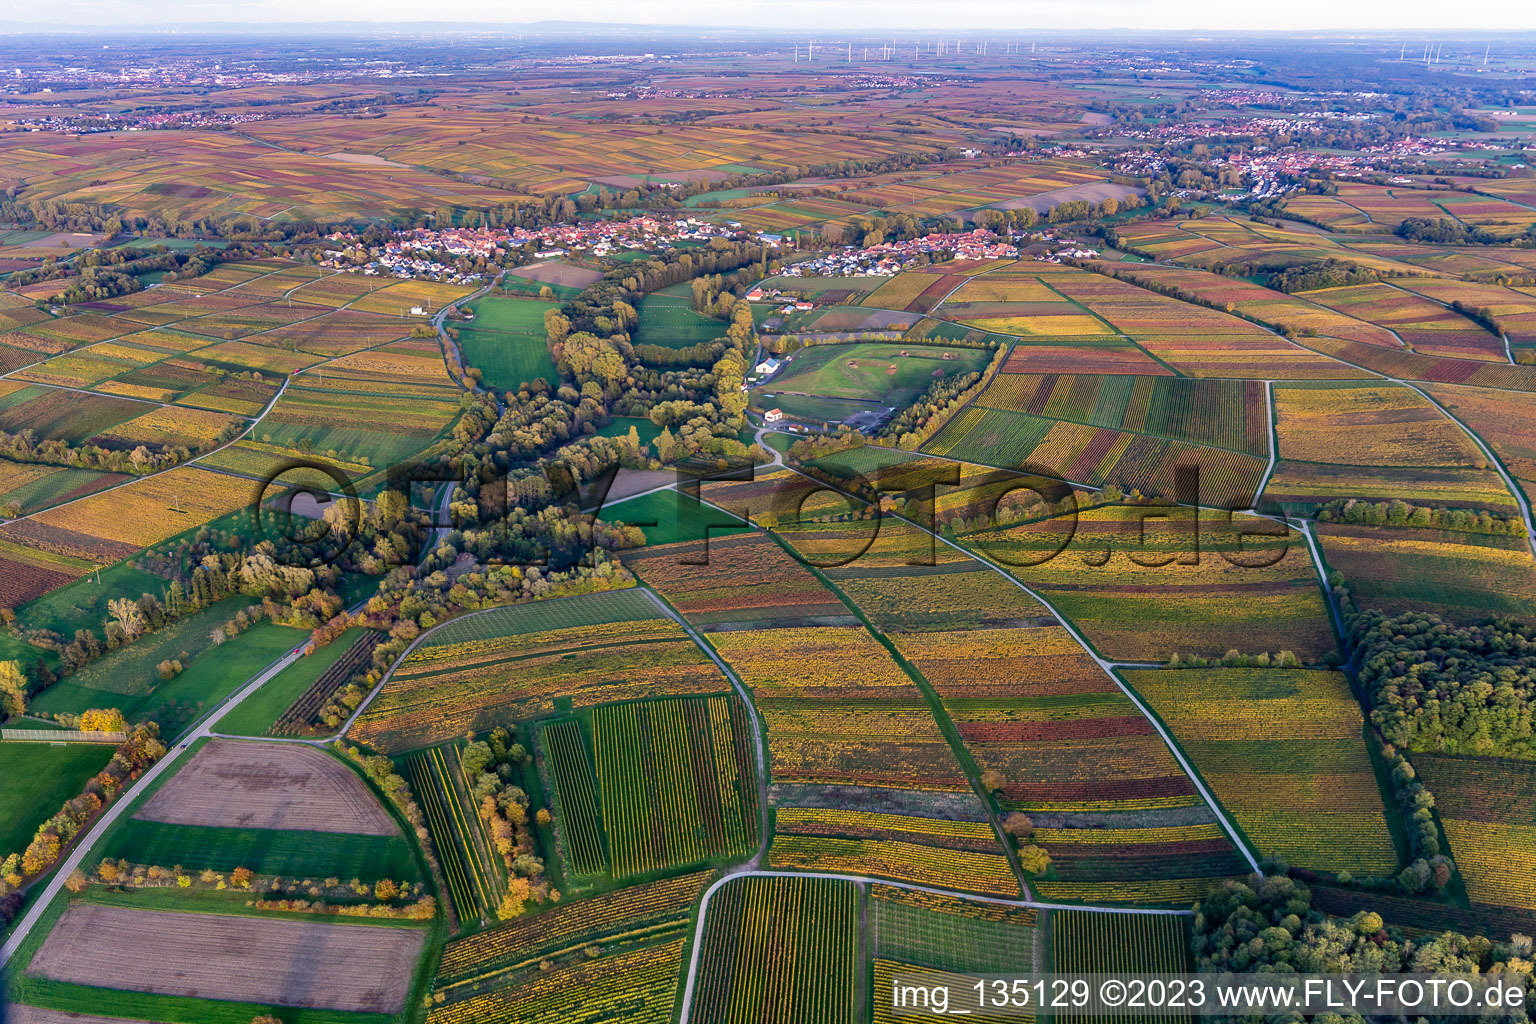 Aerial view of District Heuchelheim in Heuchelheim-Klingen in the state Rhineland-Palatinate, Germany